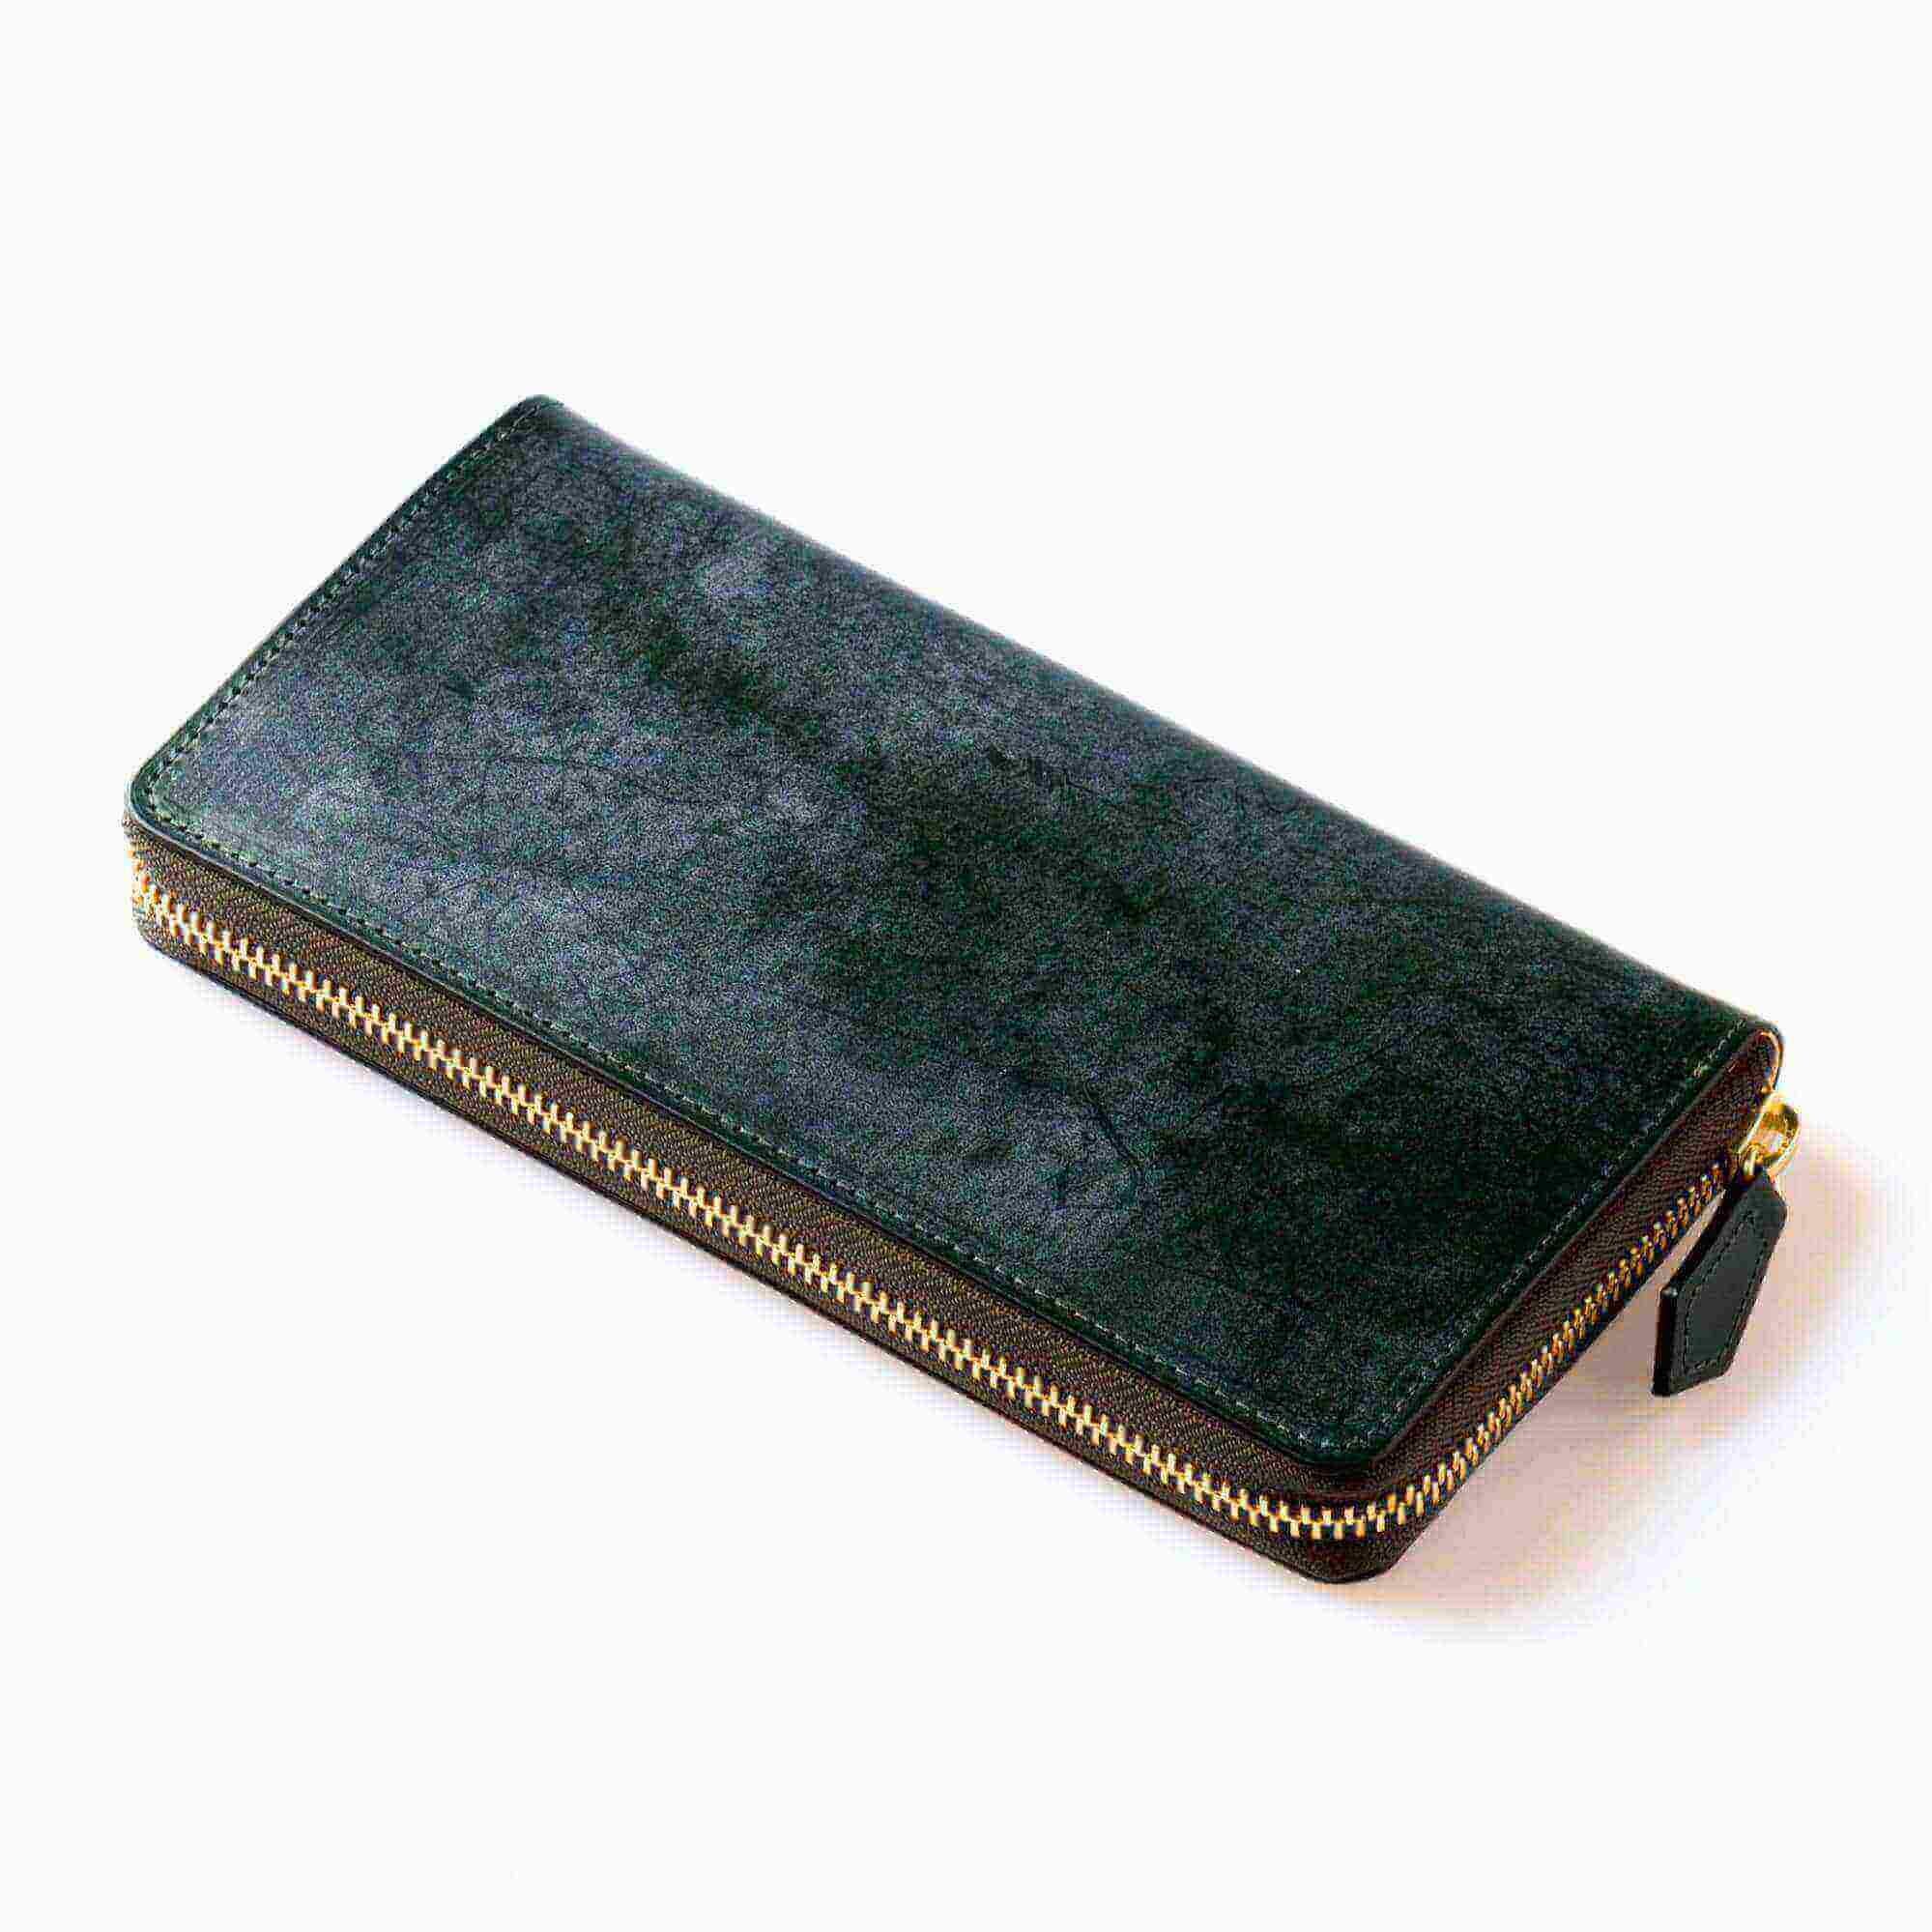 ココマイスター(COCOMEISTER) 30代 男性 革財布 おすすめ ラウンドジップ財布 ブライドルグランドウォレット